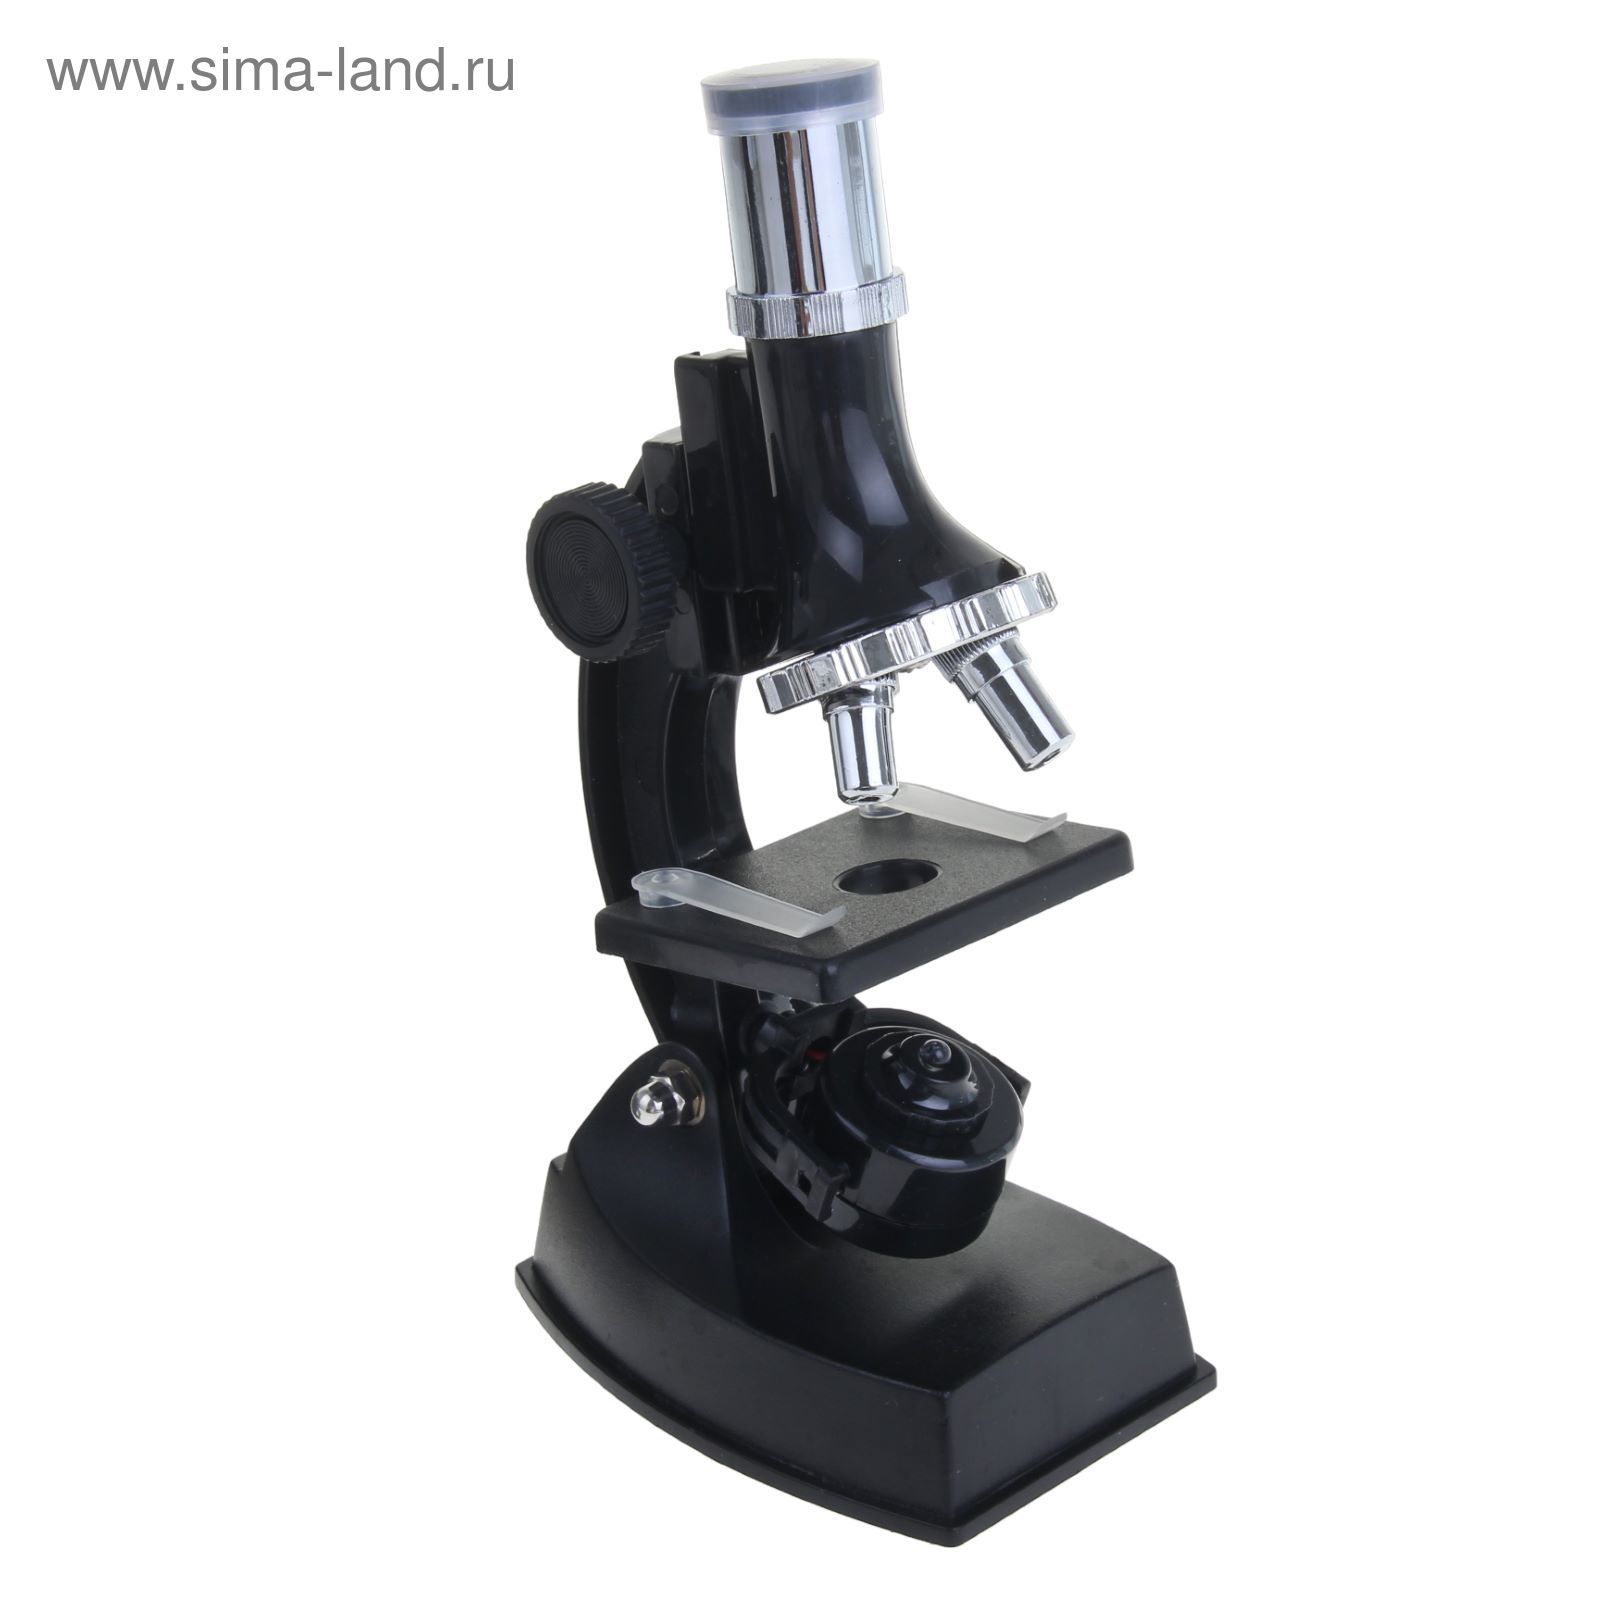 Микроскоп сувенирный, кратн 100, 300, 600, 900, инструменты, баночка для образцов, 27х24 см 12685